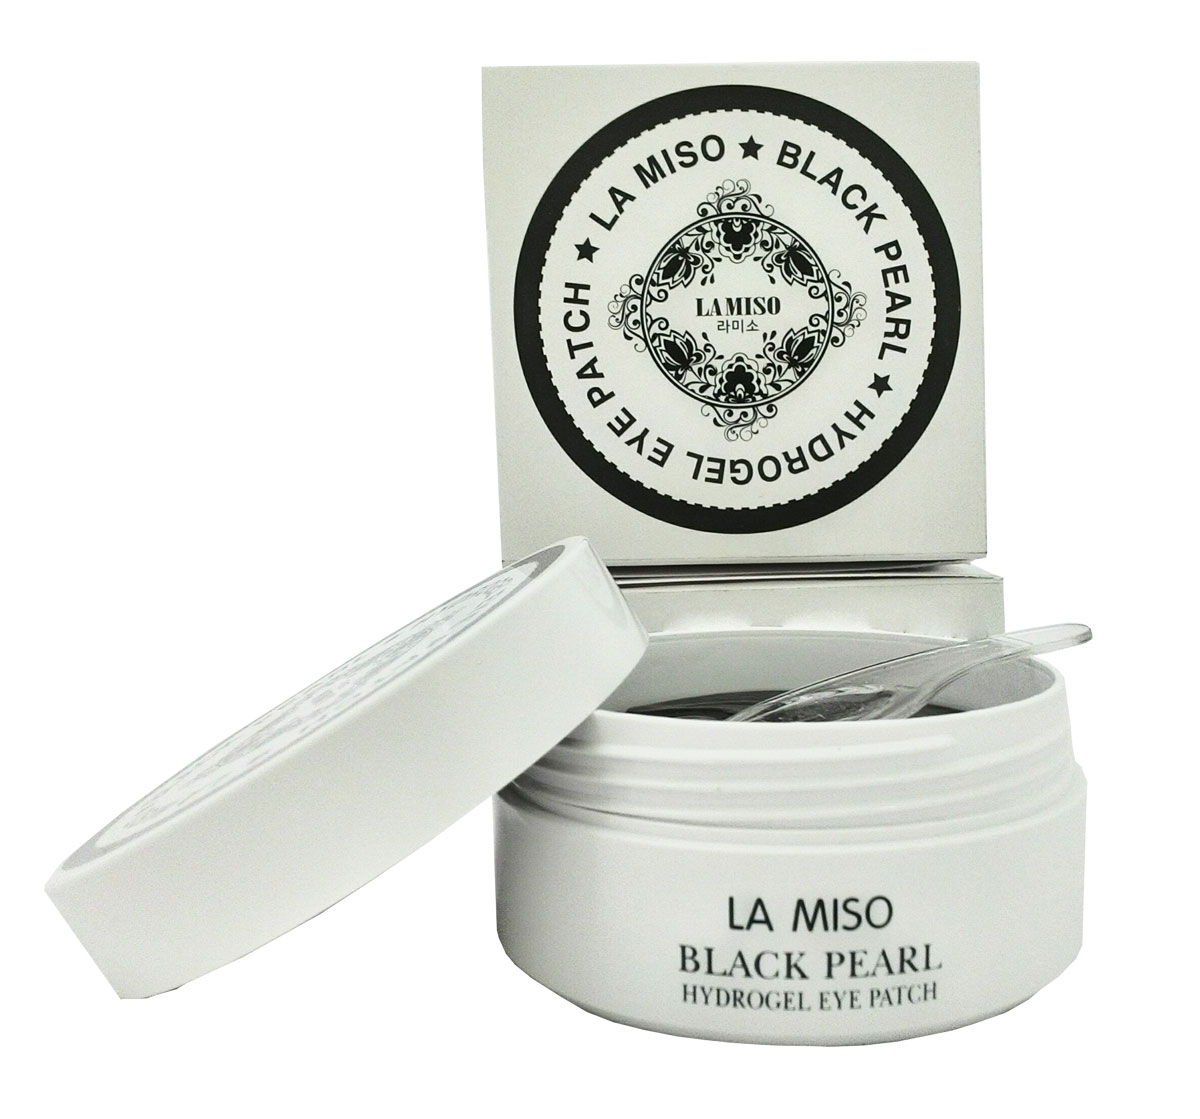 заказать и купить La Miso Гидрогелевая маска с черным жемчугом для кожи вокруг глаз, Black Pearl, 60 шт